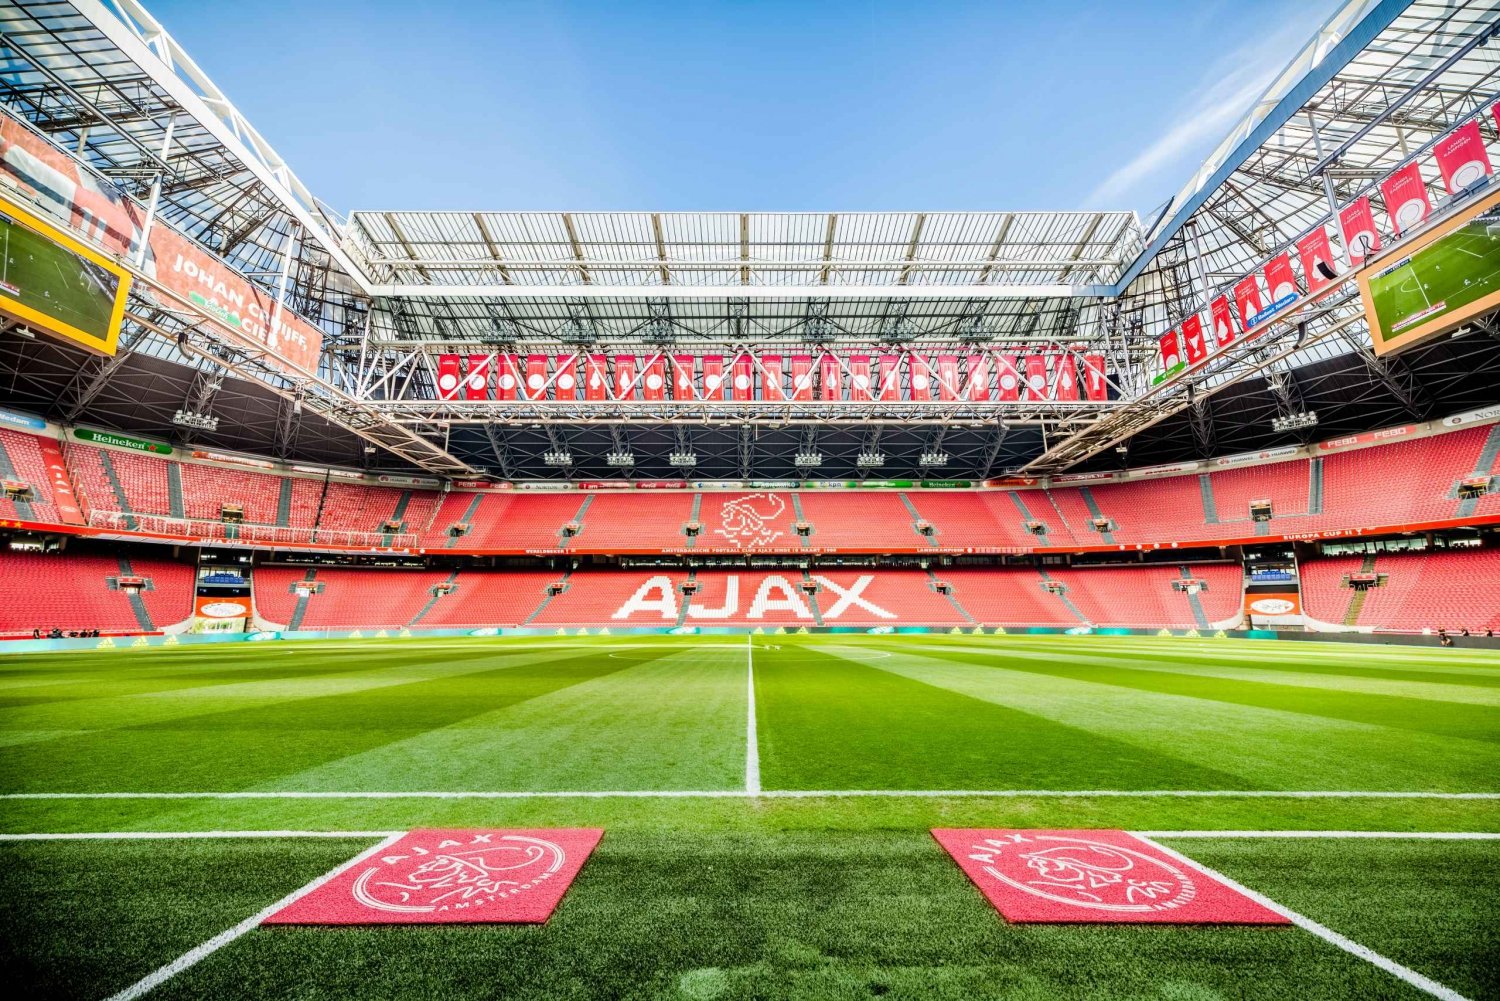 Johan Cruijff ArenA Stadium 75-Minute Tour